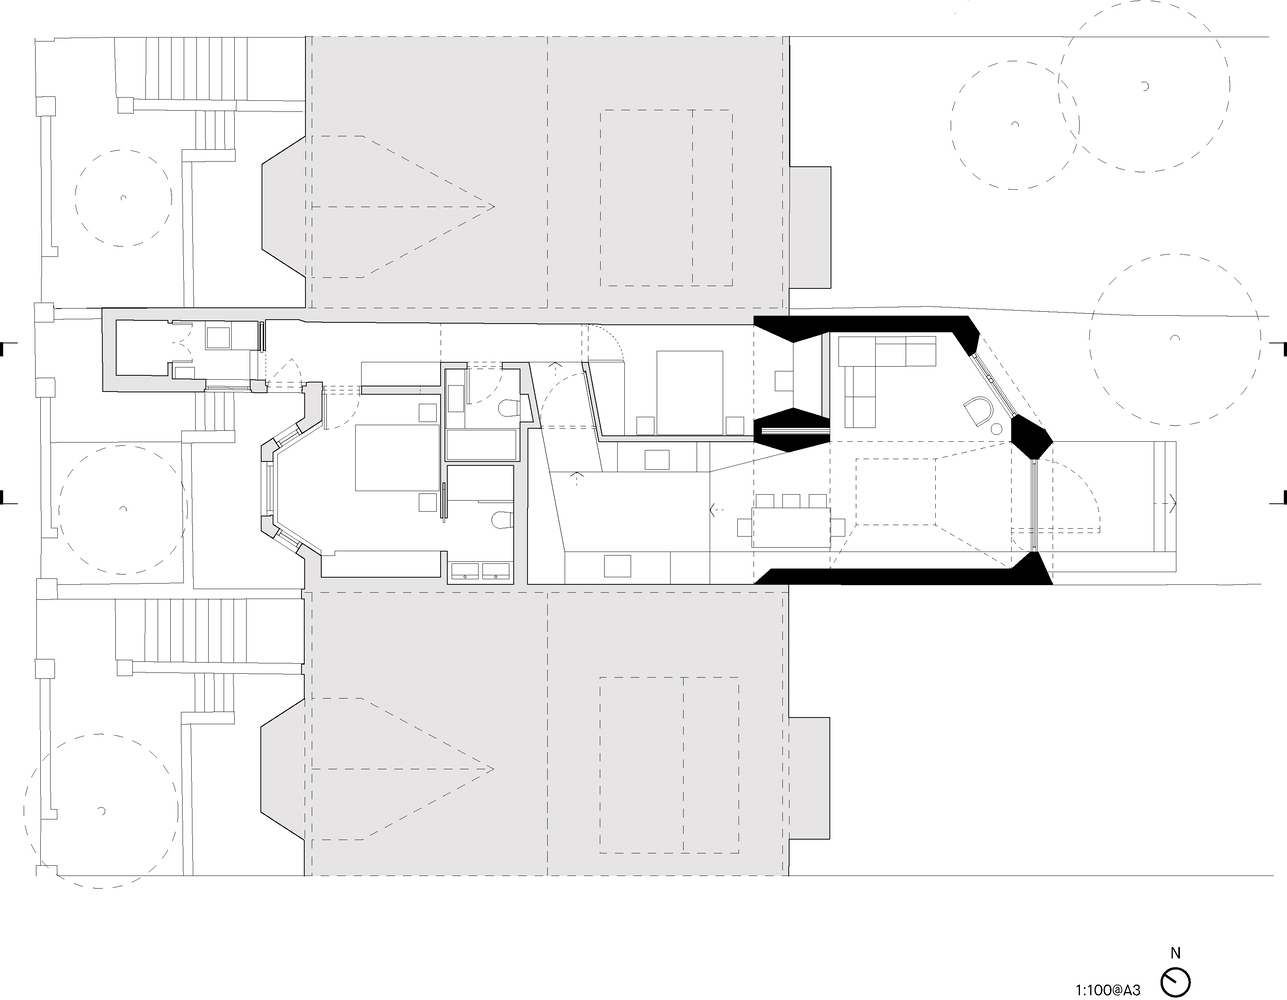 ConForm Architects,别墅设计,97㎡,英国,伦敦,别墅设计案例,别墅设计方案,庭院改造,水磨石